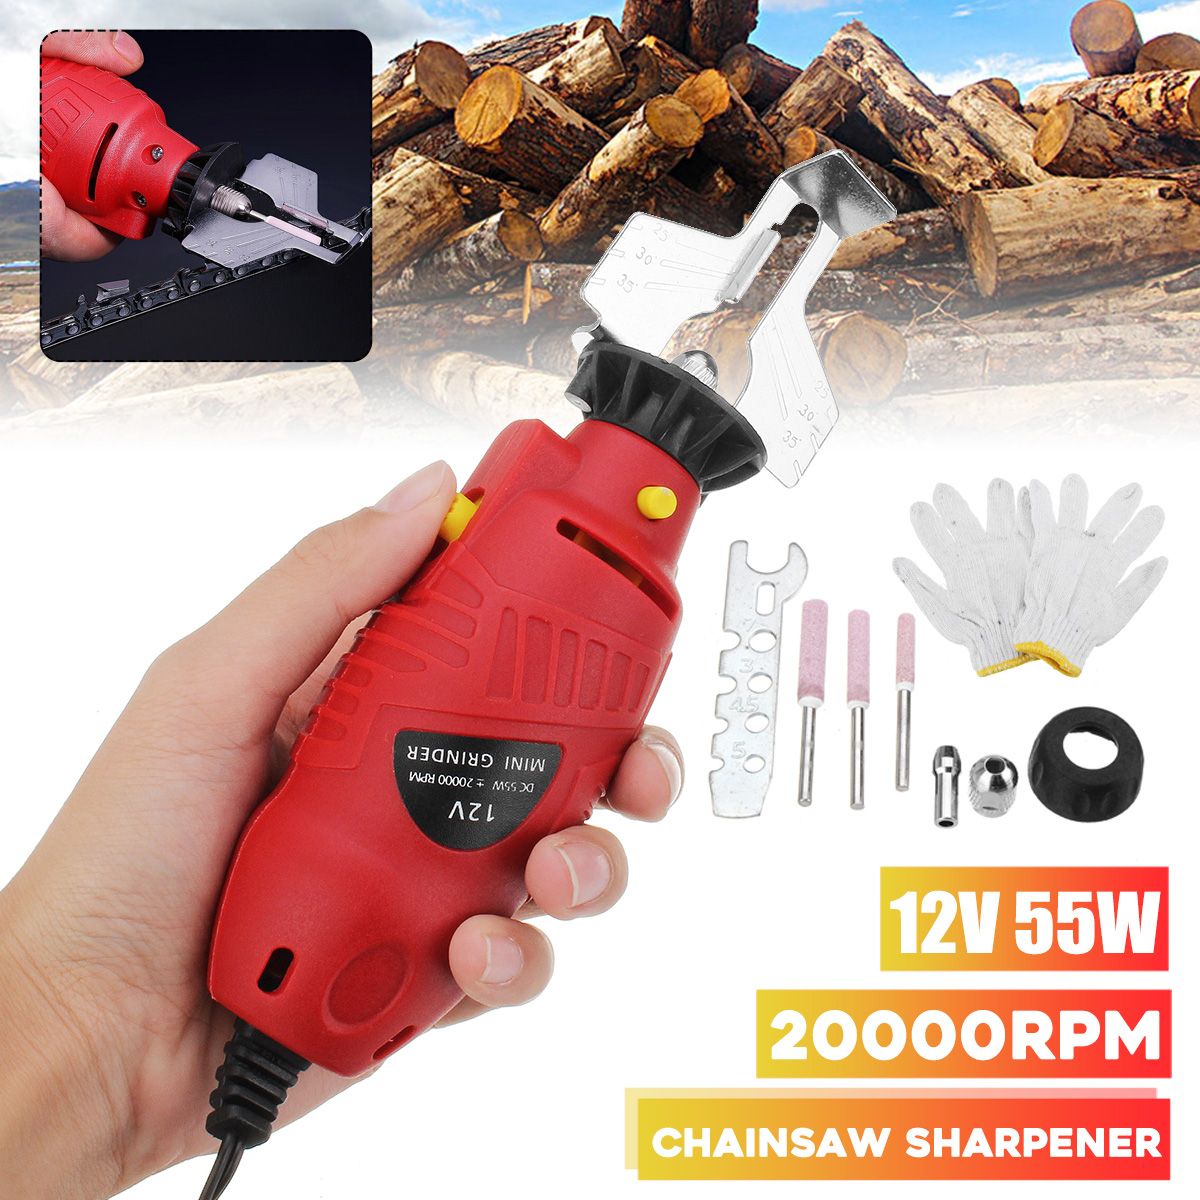 12V-Chainsaw-Sharpener-Electric-Handheld-Grinder-Tools-File-Set-1537976